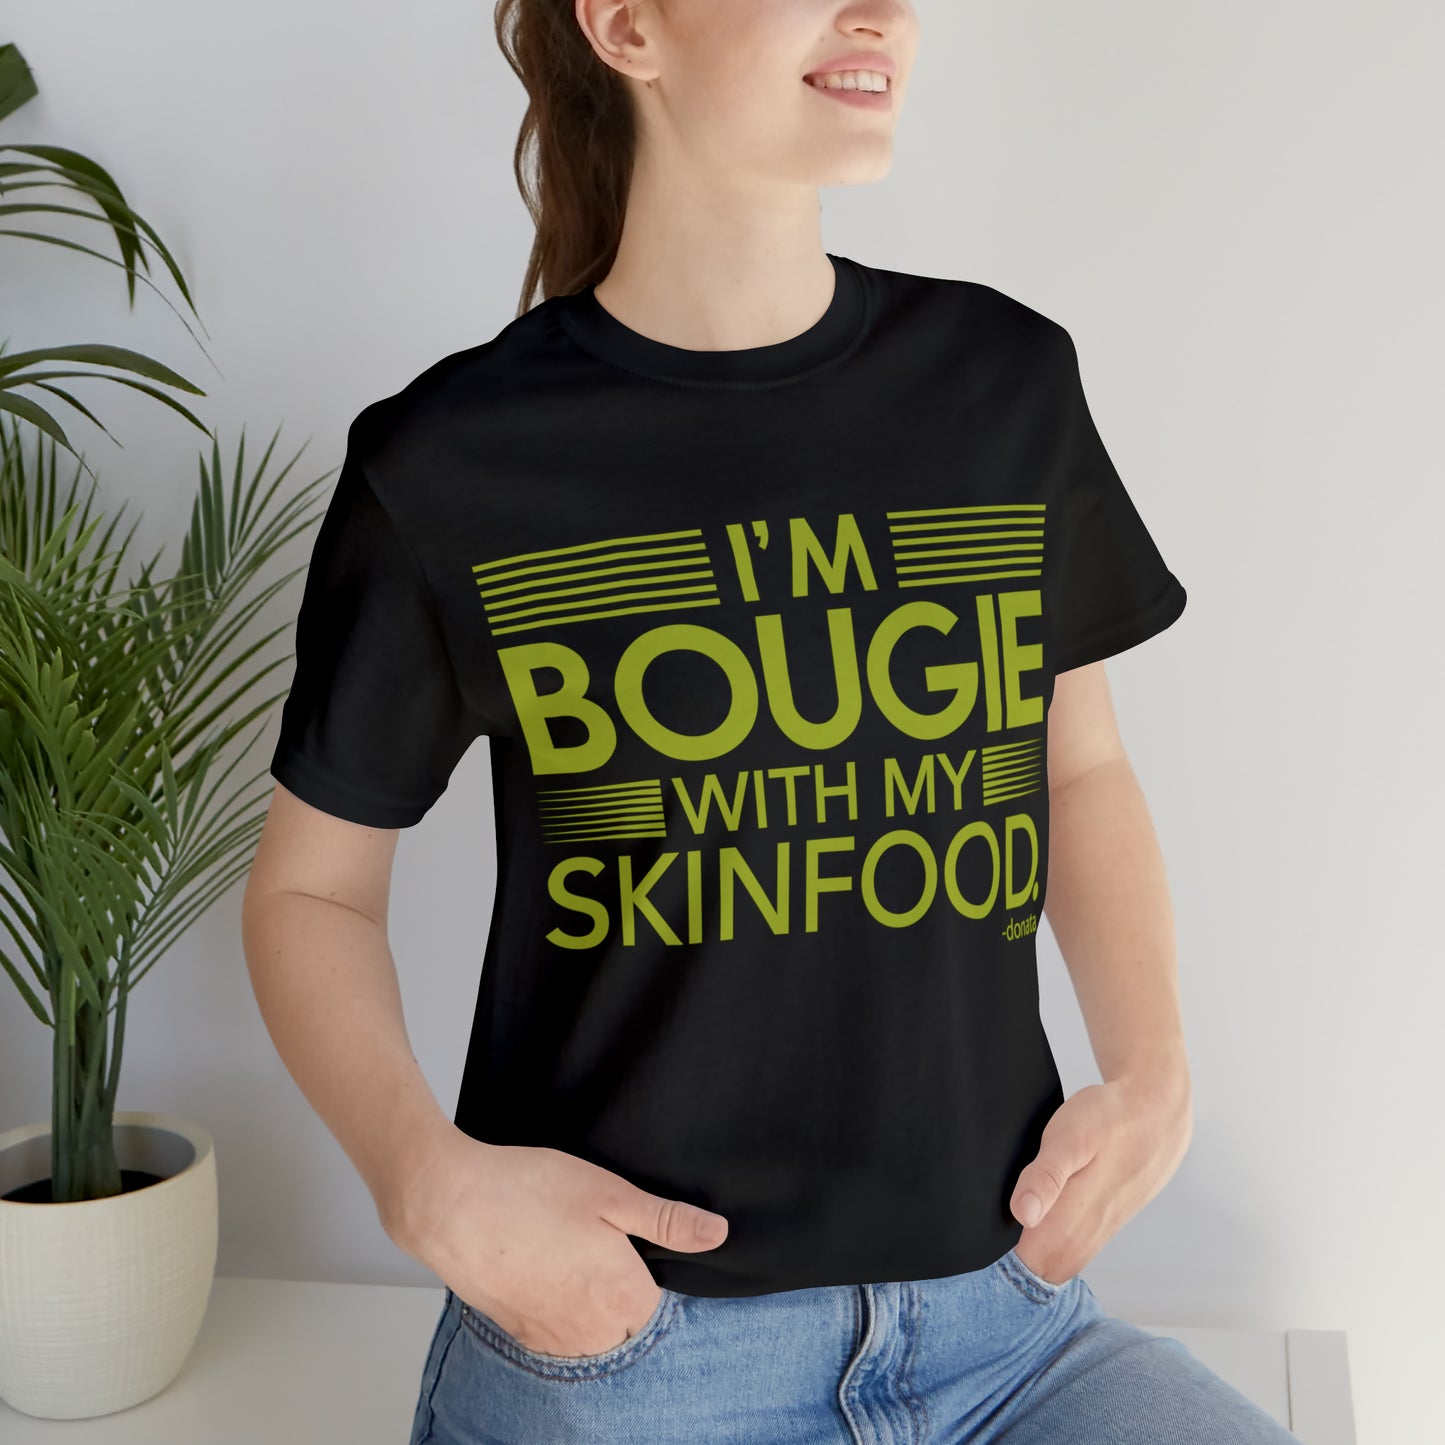 Soy bougie... comida para la piel